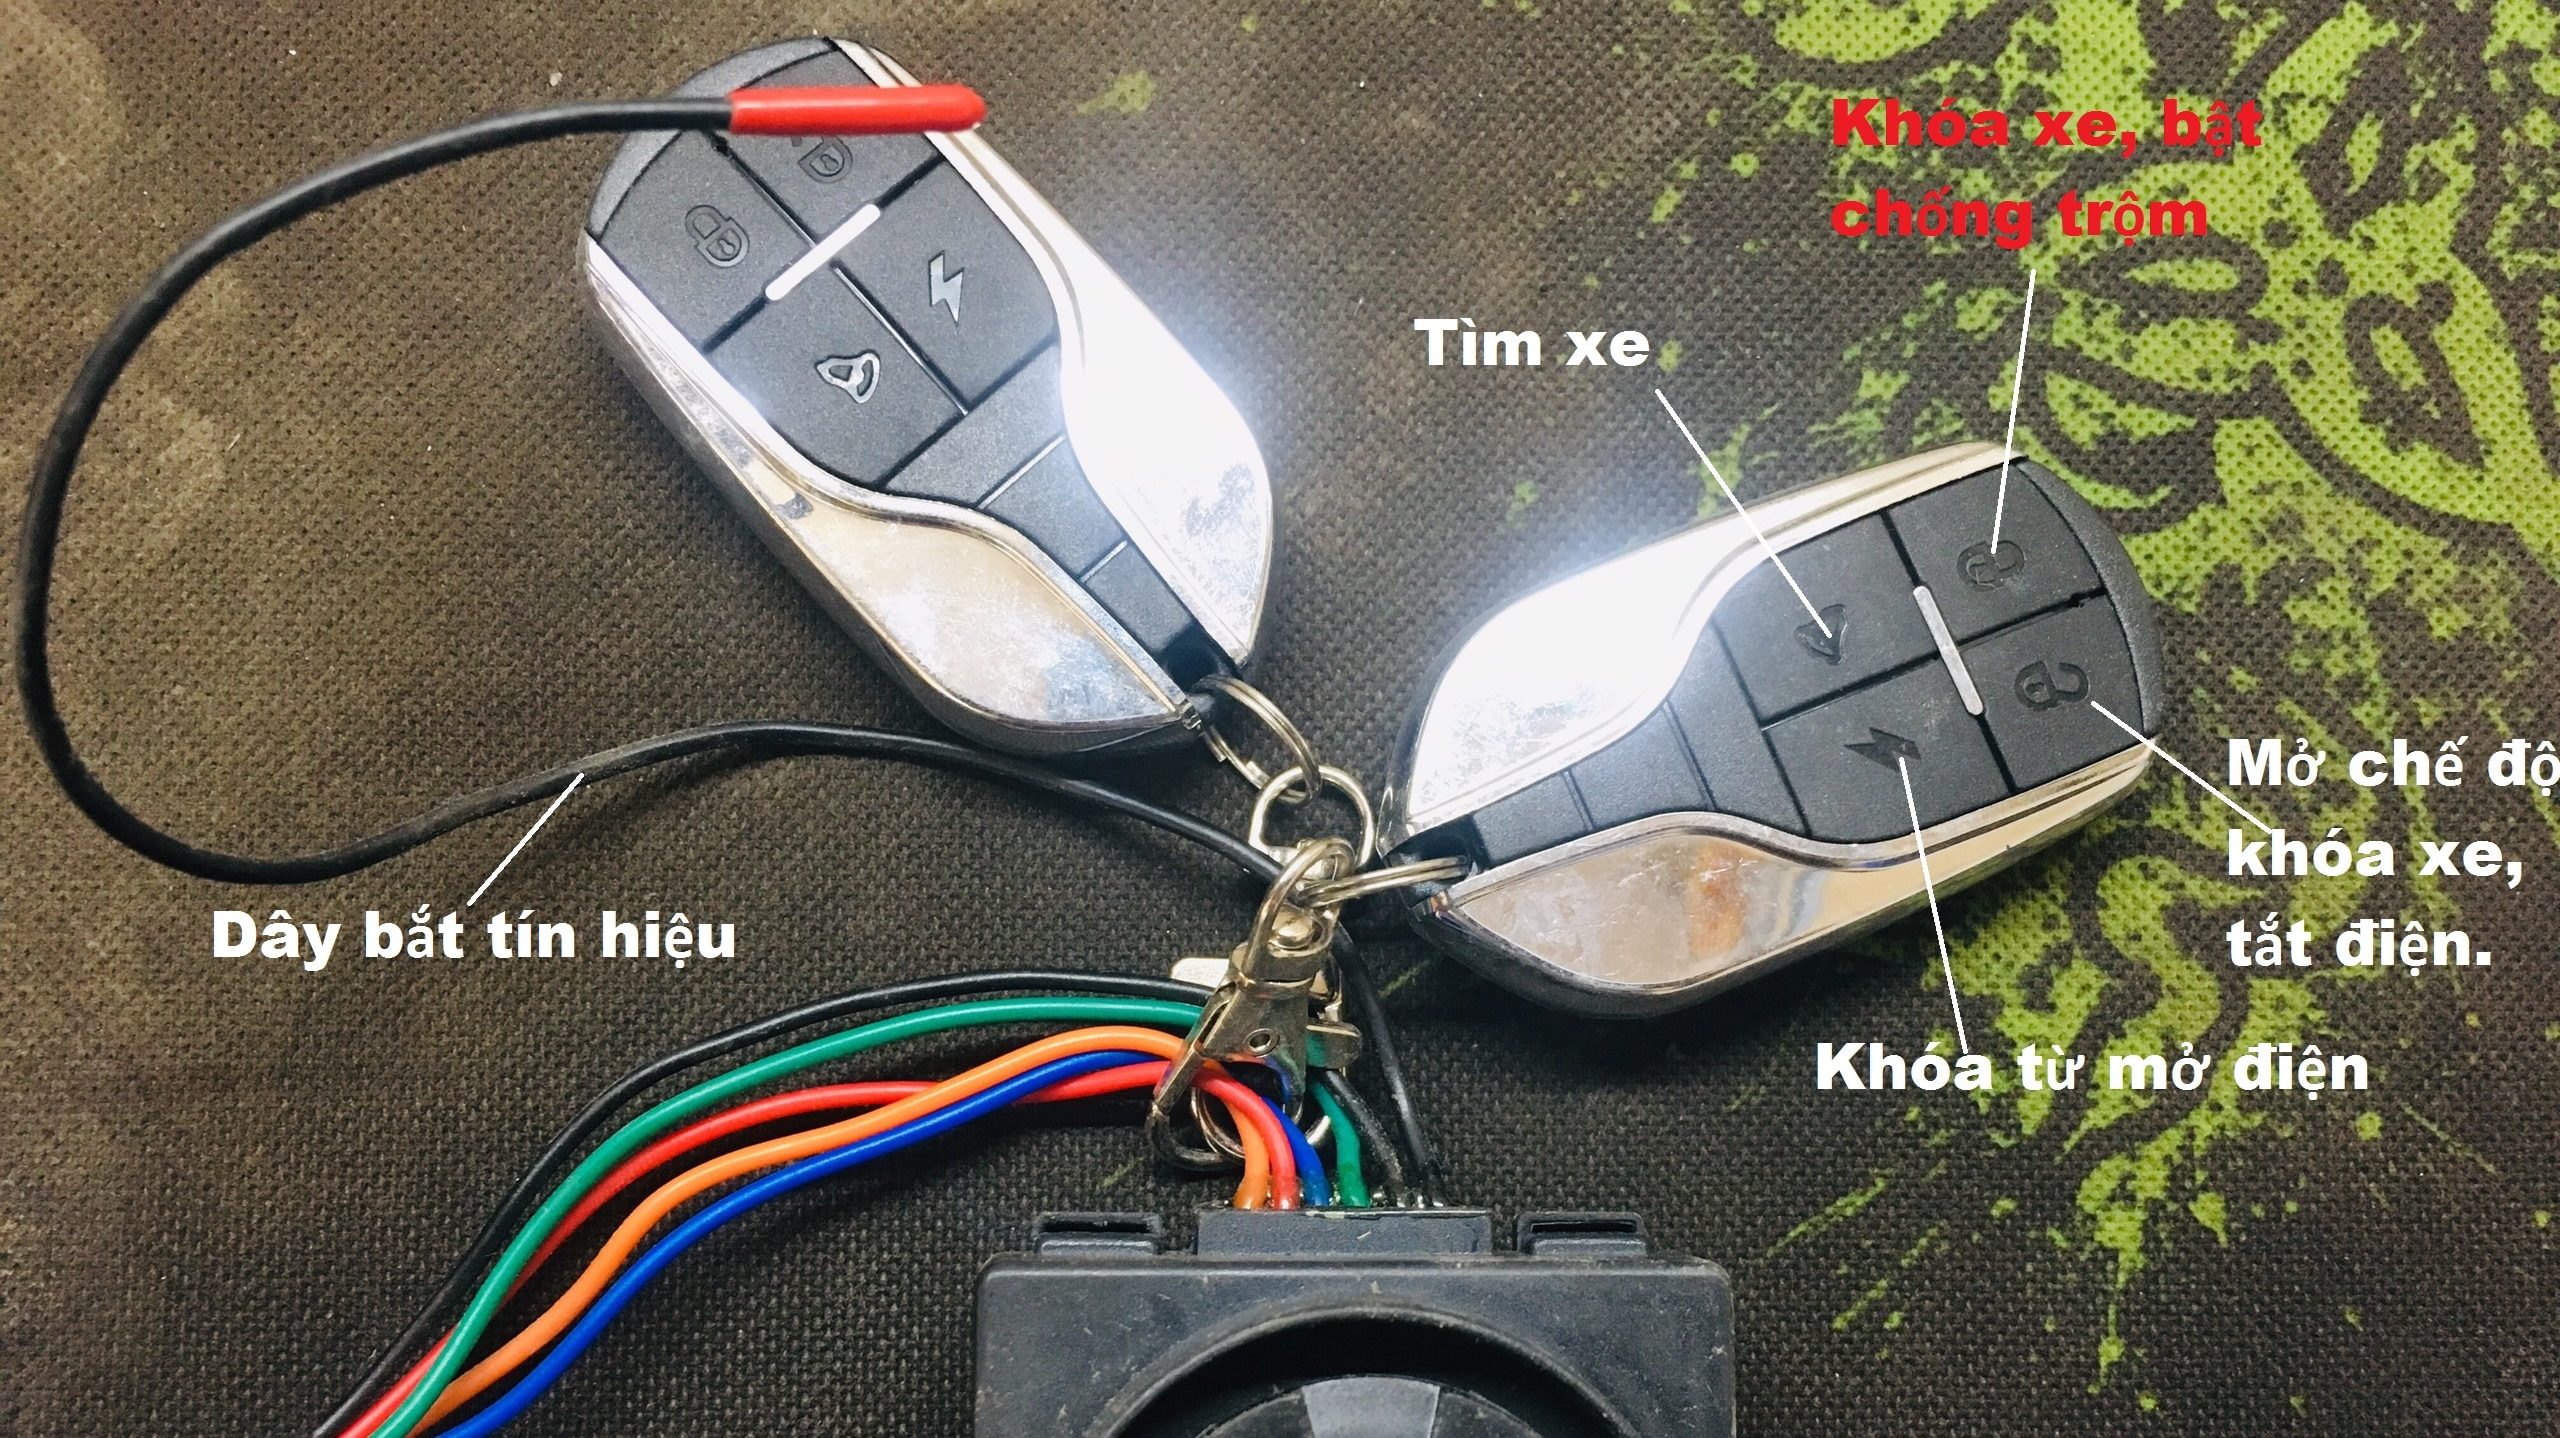 Hướng Dẫn] Cách sử dụng khóa chống trộm Xe đạp điện, Xe máy điện